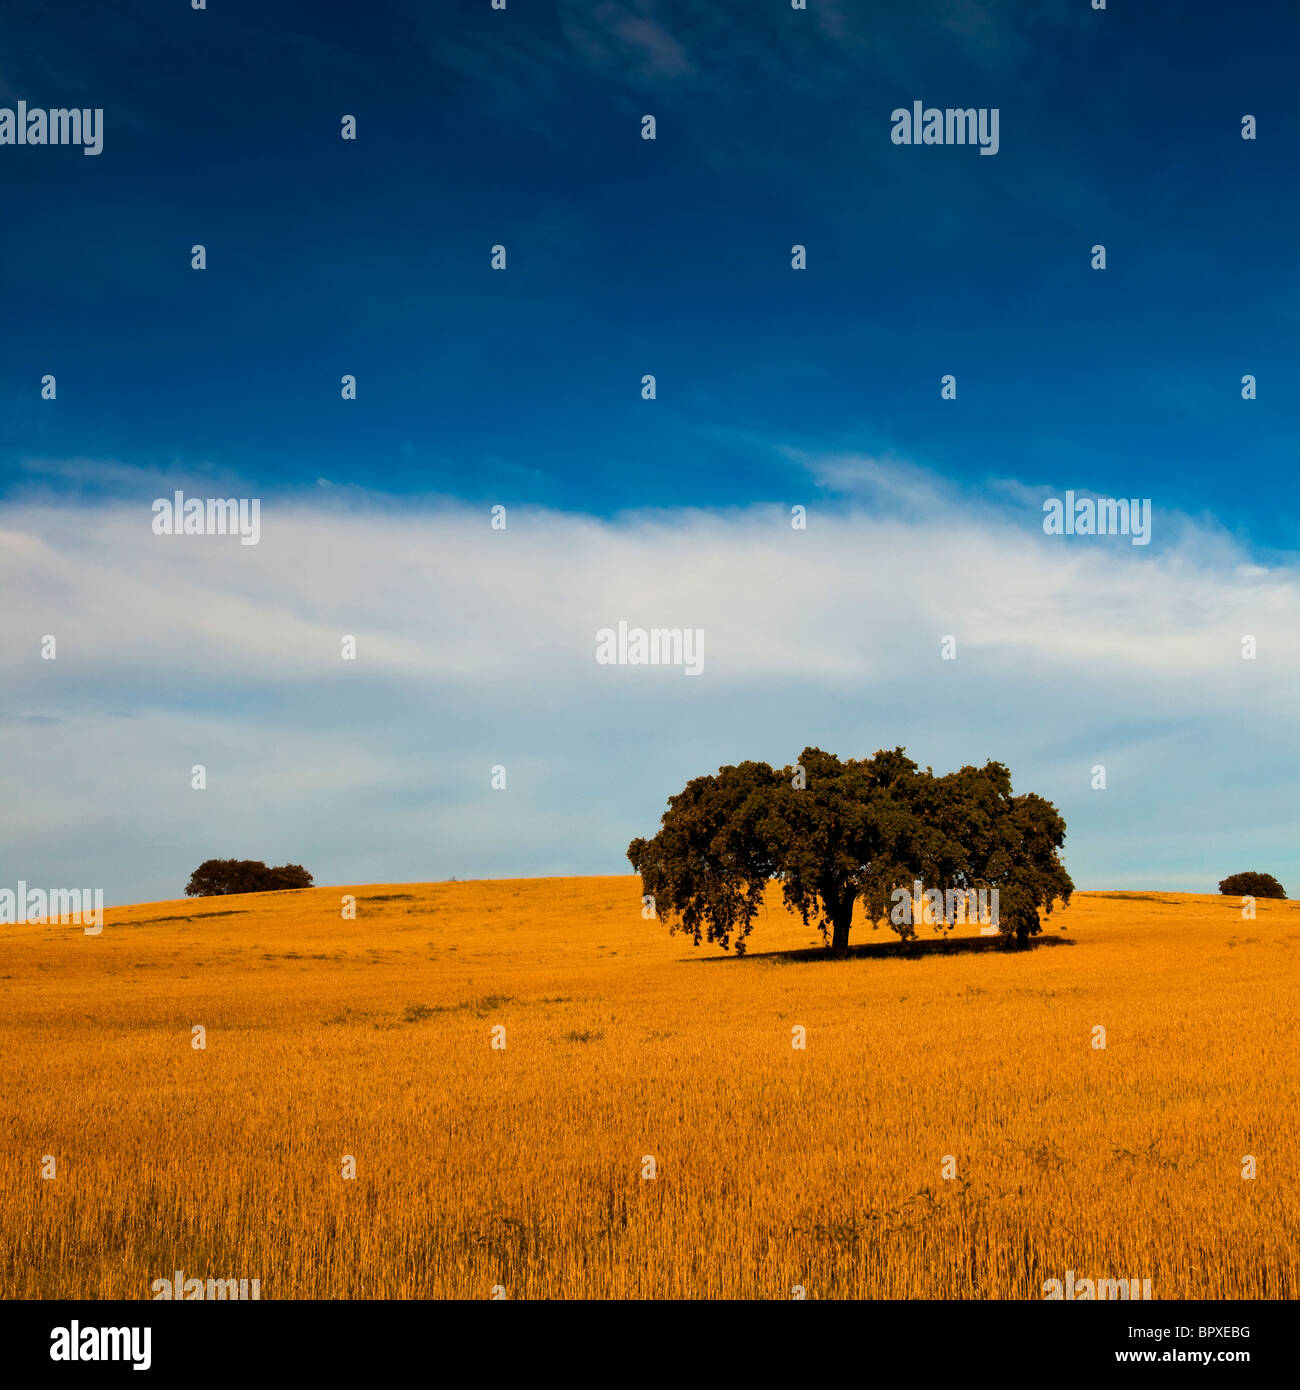 Giallo campo di grano con un grande cielo blu e nuvole Foto Stock